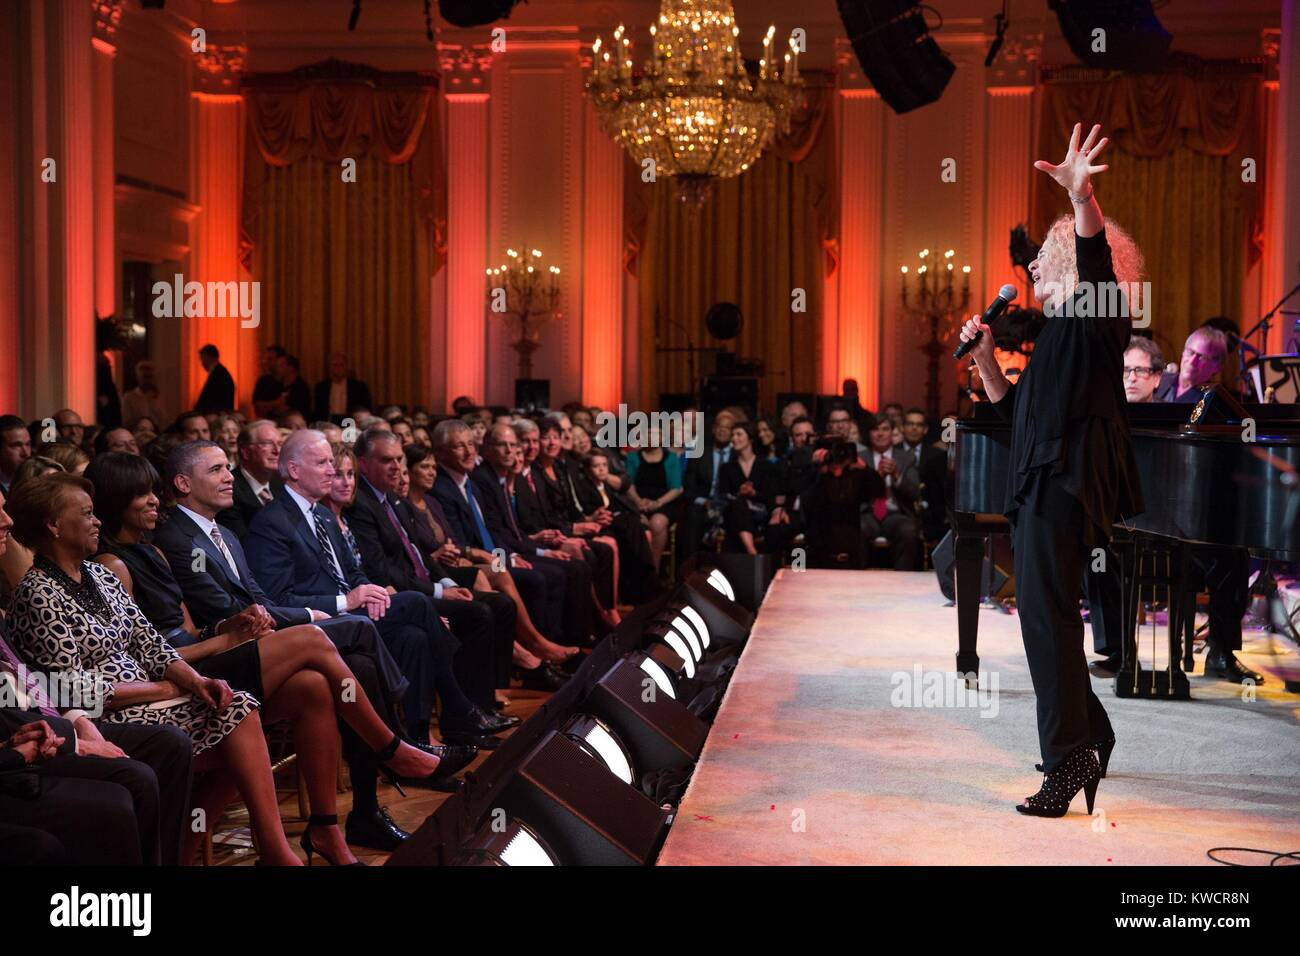 Carole King singen auf der Bühne im Weißen Haus Ost Zimmer. Präsident Obama präsentiert König mit der 2013 Bibliothek des Kongresses Gershwin Prize für populäre Songs. Mai 22, 2013. (BSLOC 2015 3 125) Stockfoto